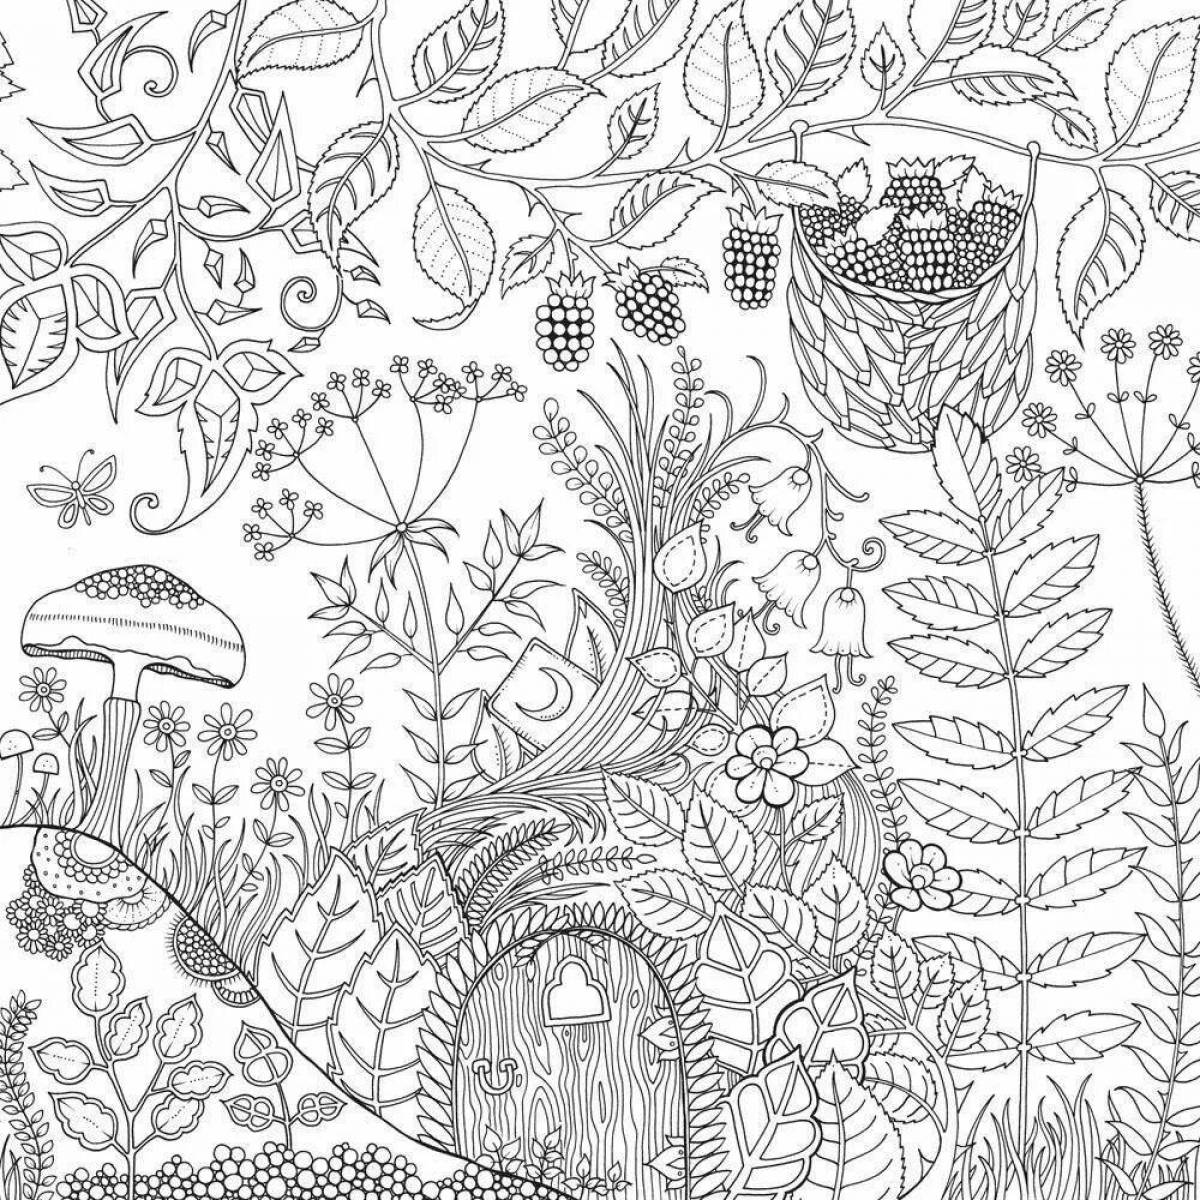 Экзотическая раскраска джоанна басфорд удивительные джунгли